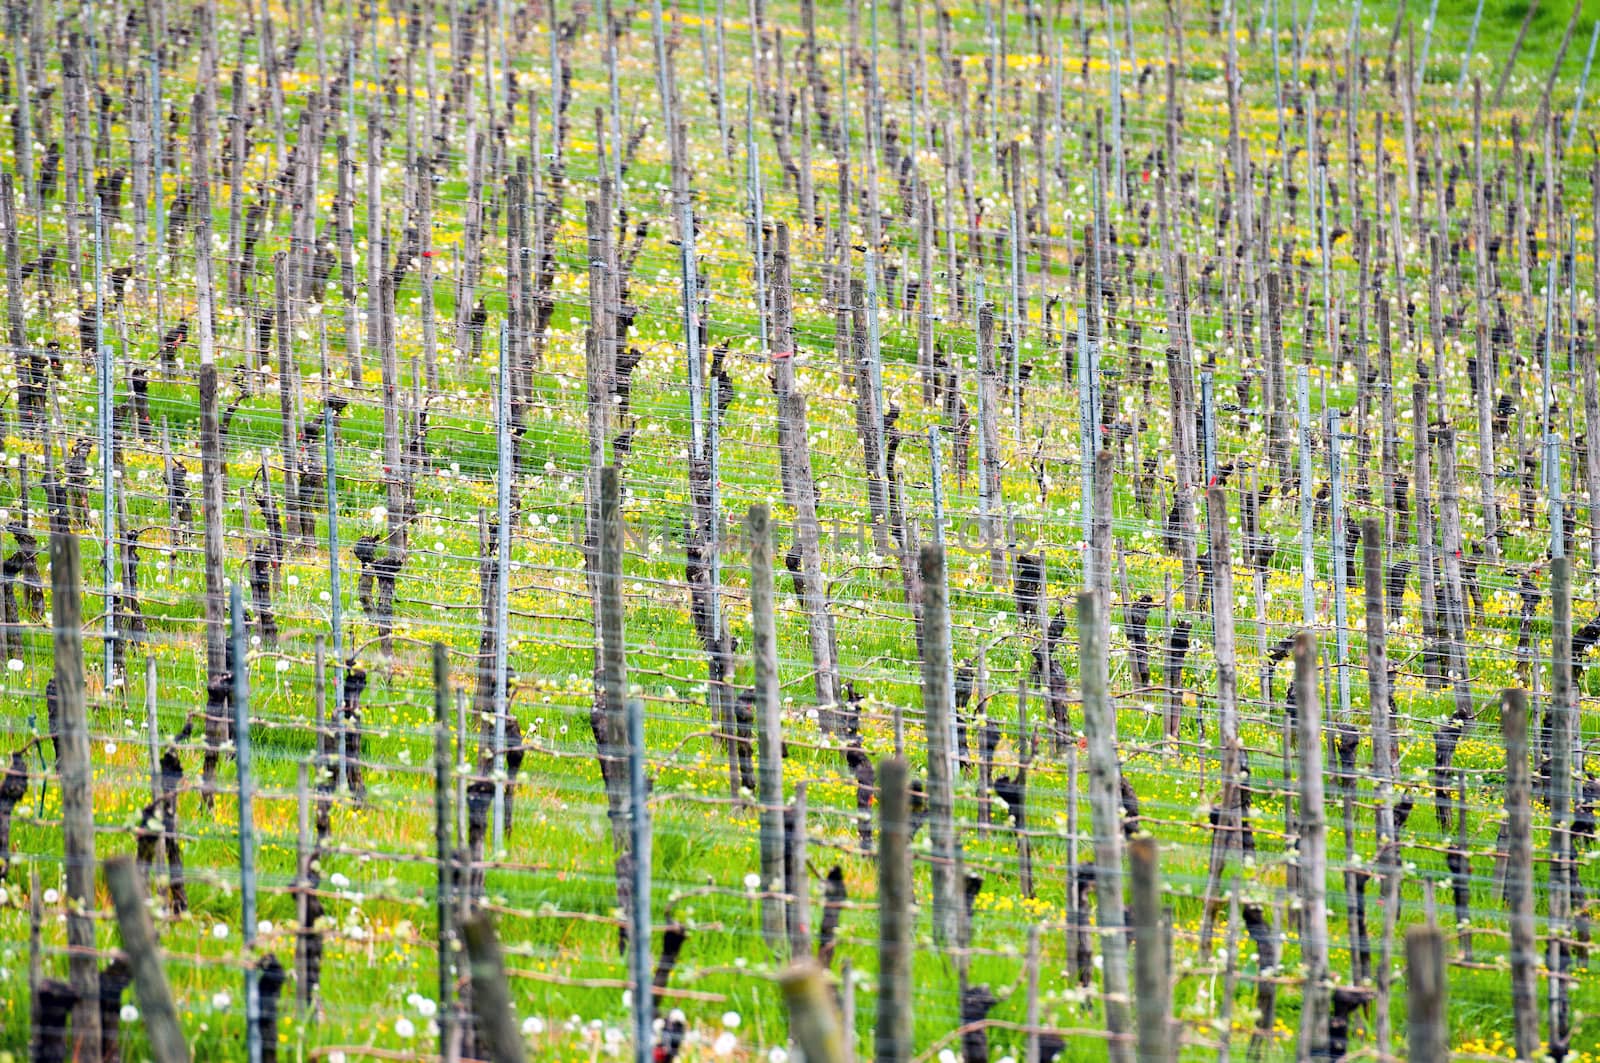 Grape Vines in the Vineyard by Rainman